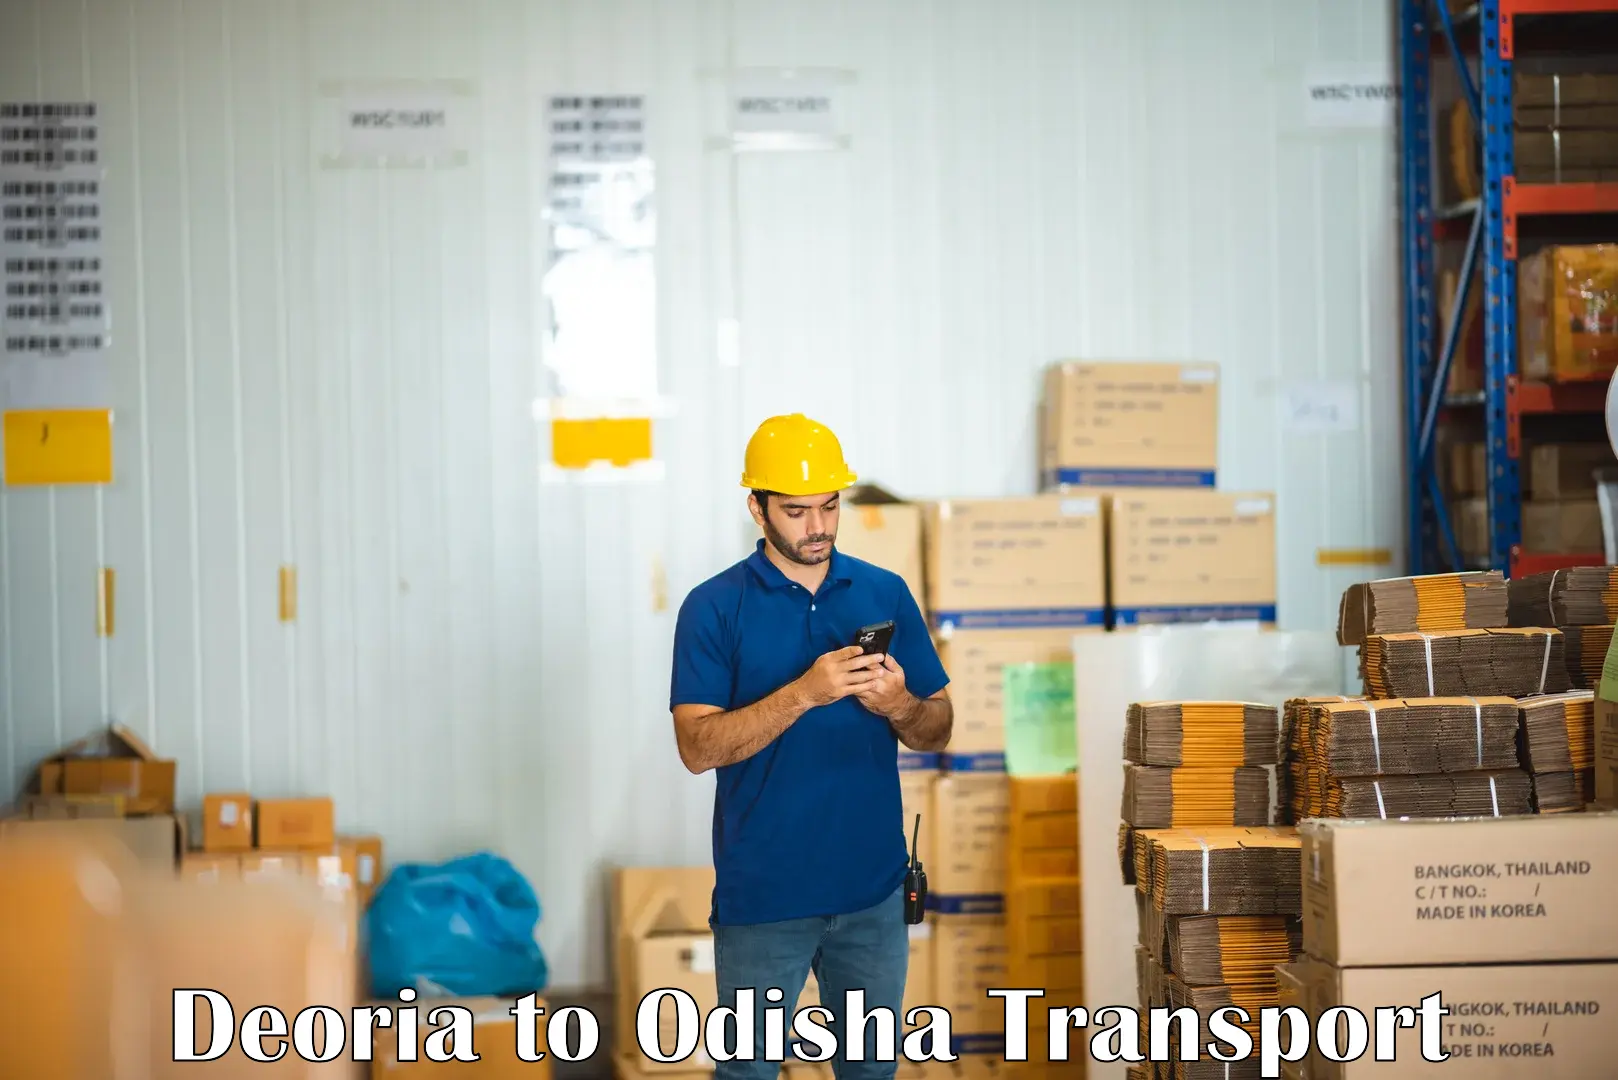 Lorry transport service Deoria to Tikiri